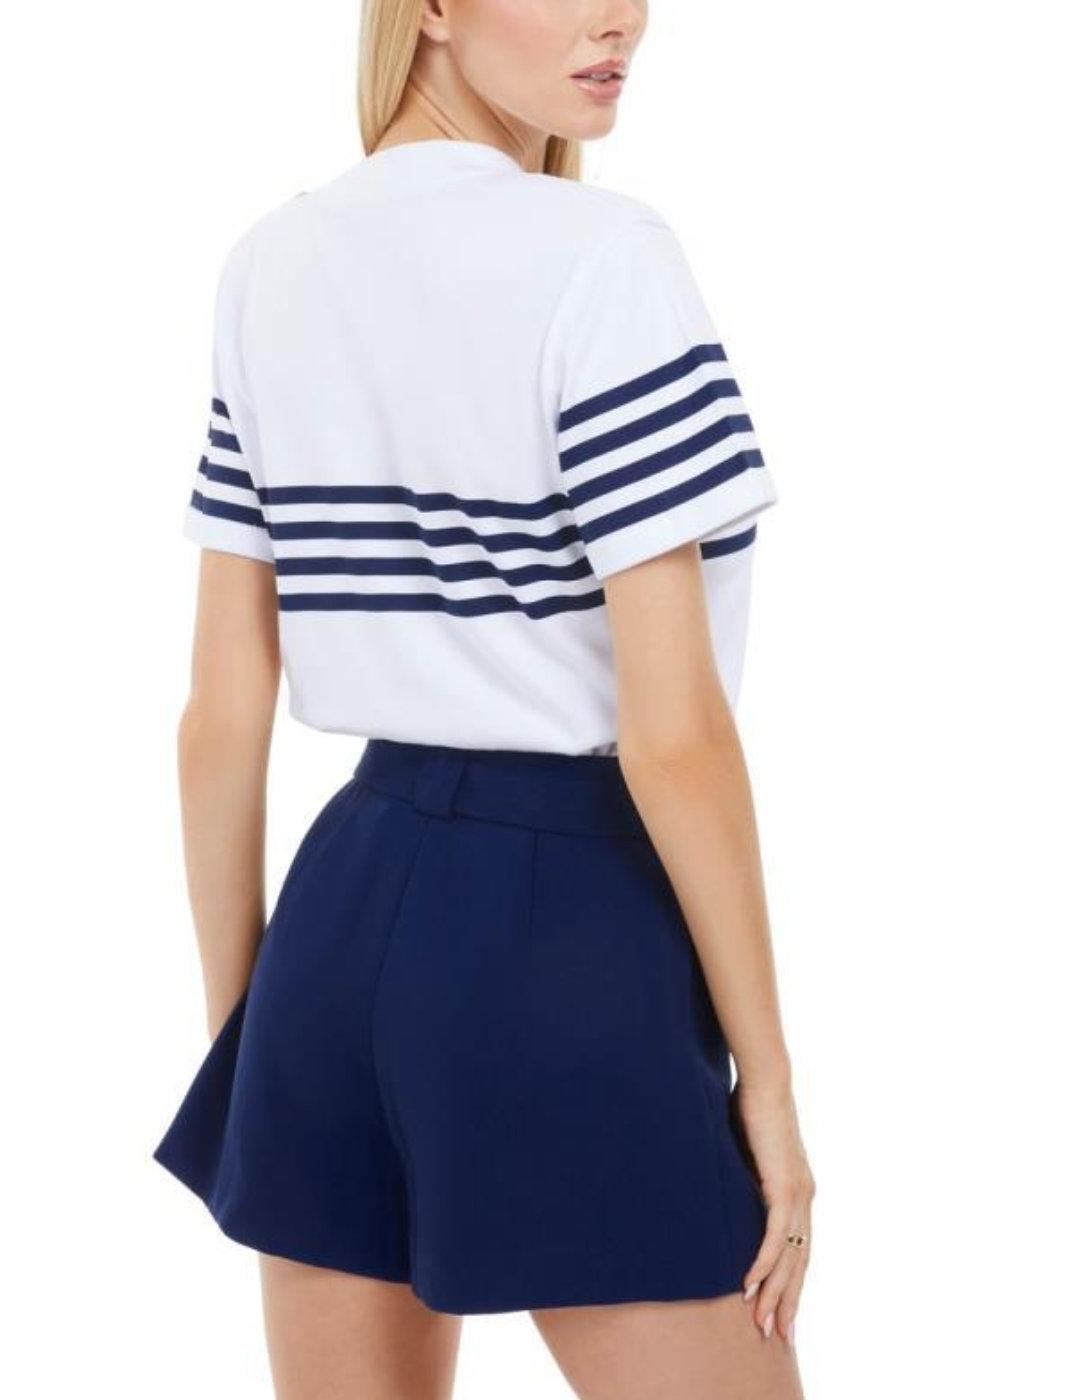 Camiseta Guess Marina blanco marinero para mujer